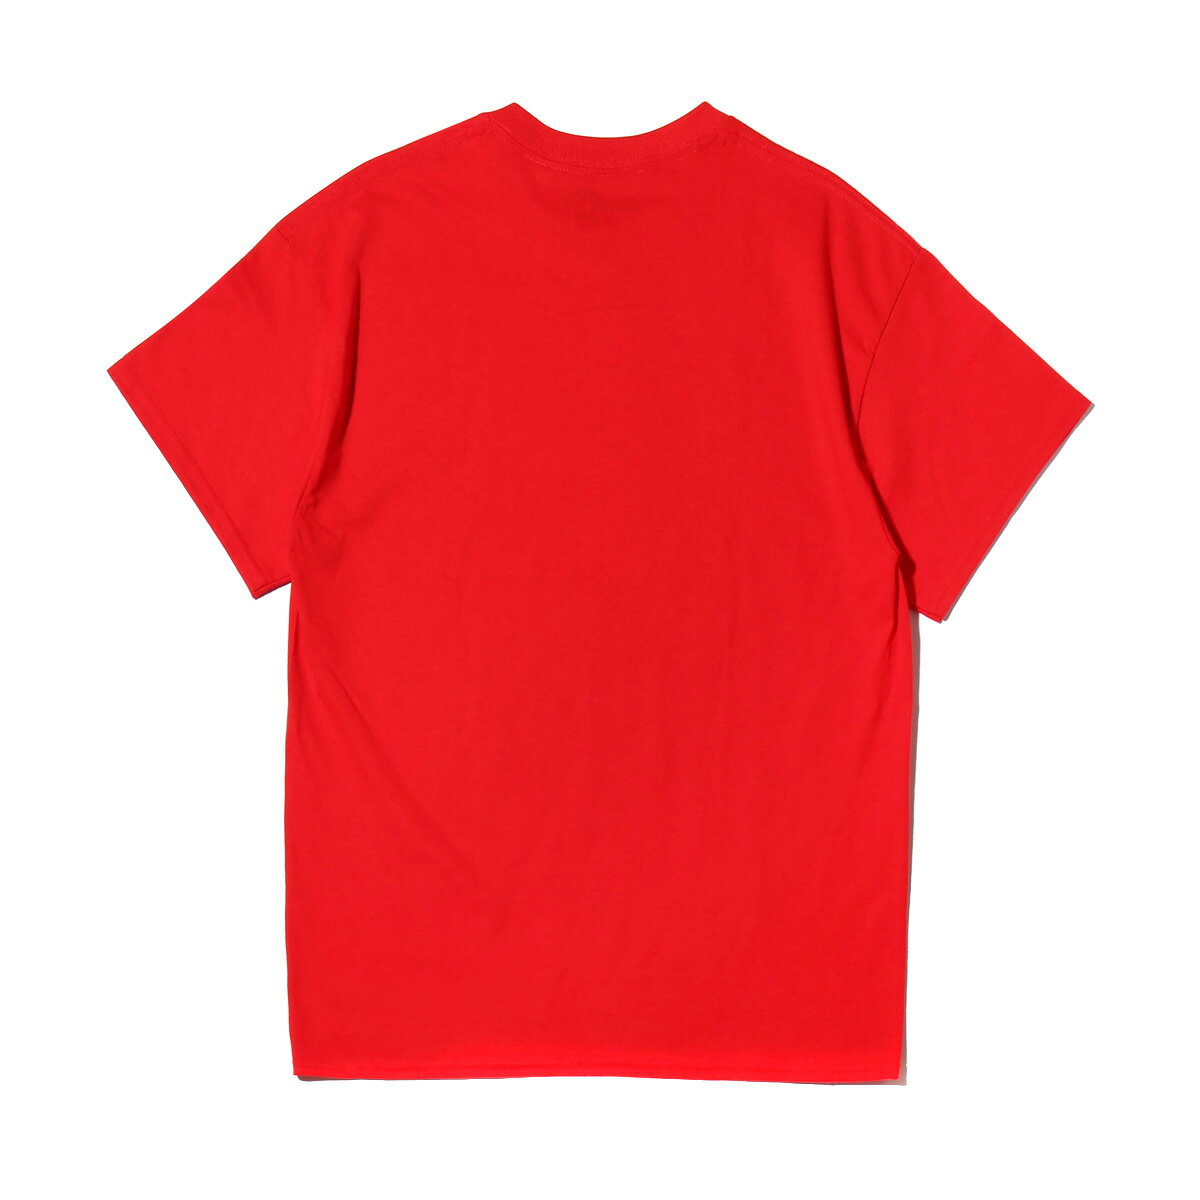 THE SIMPSONS x ATMOS LAB BART TEE (ザシンプソンズ アトモスラボ バート ティ) RED【メンズ Tシャツ】18SS-S